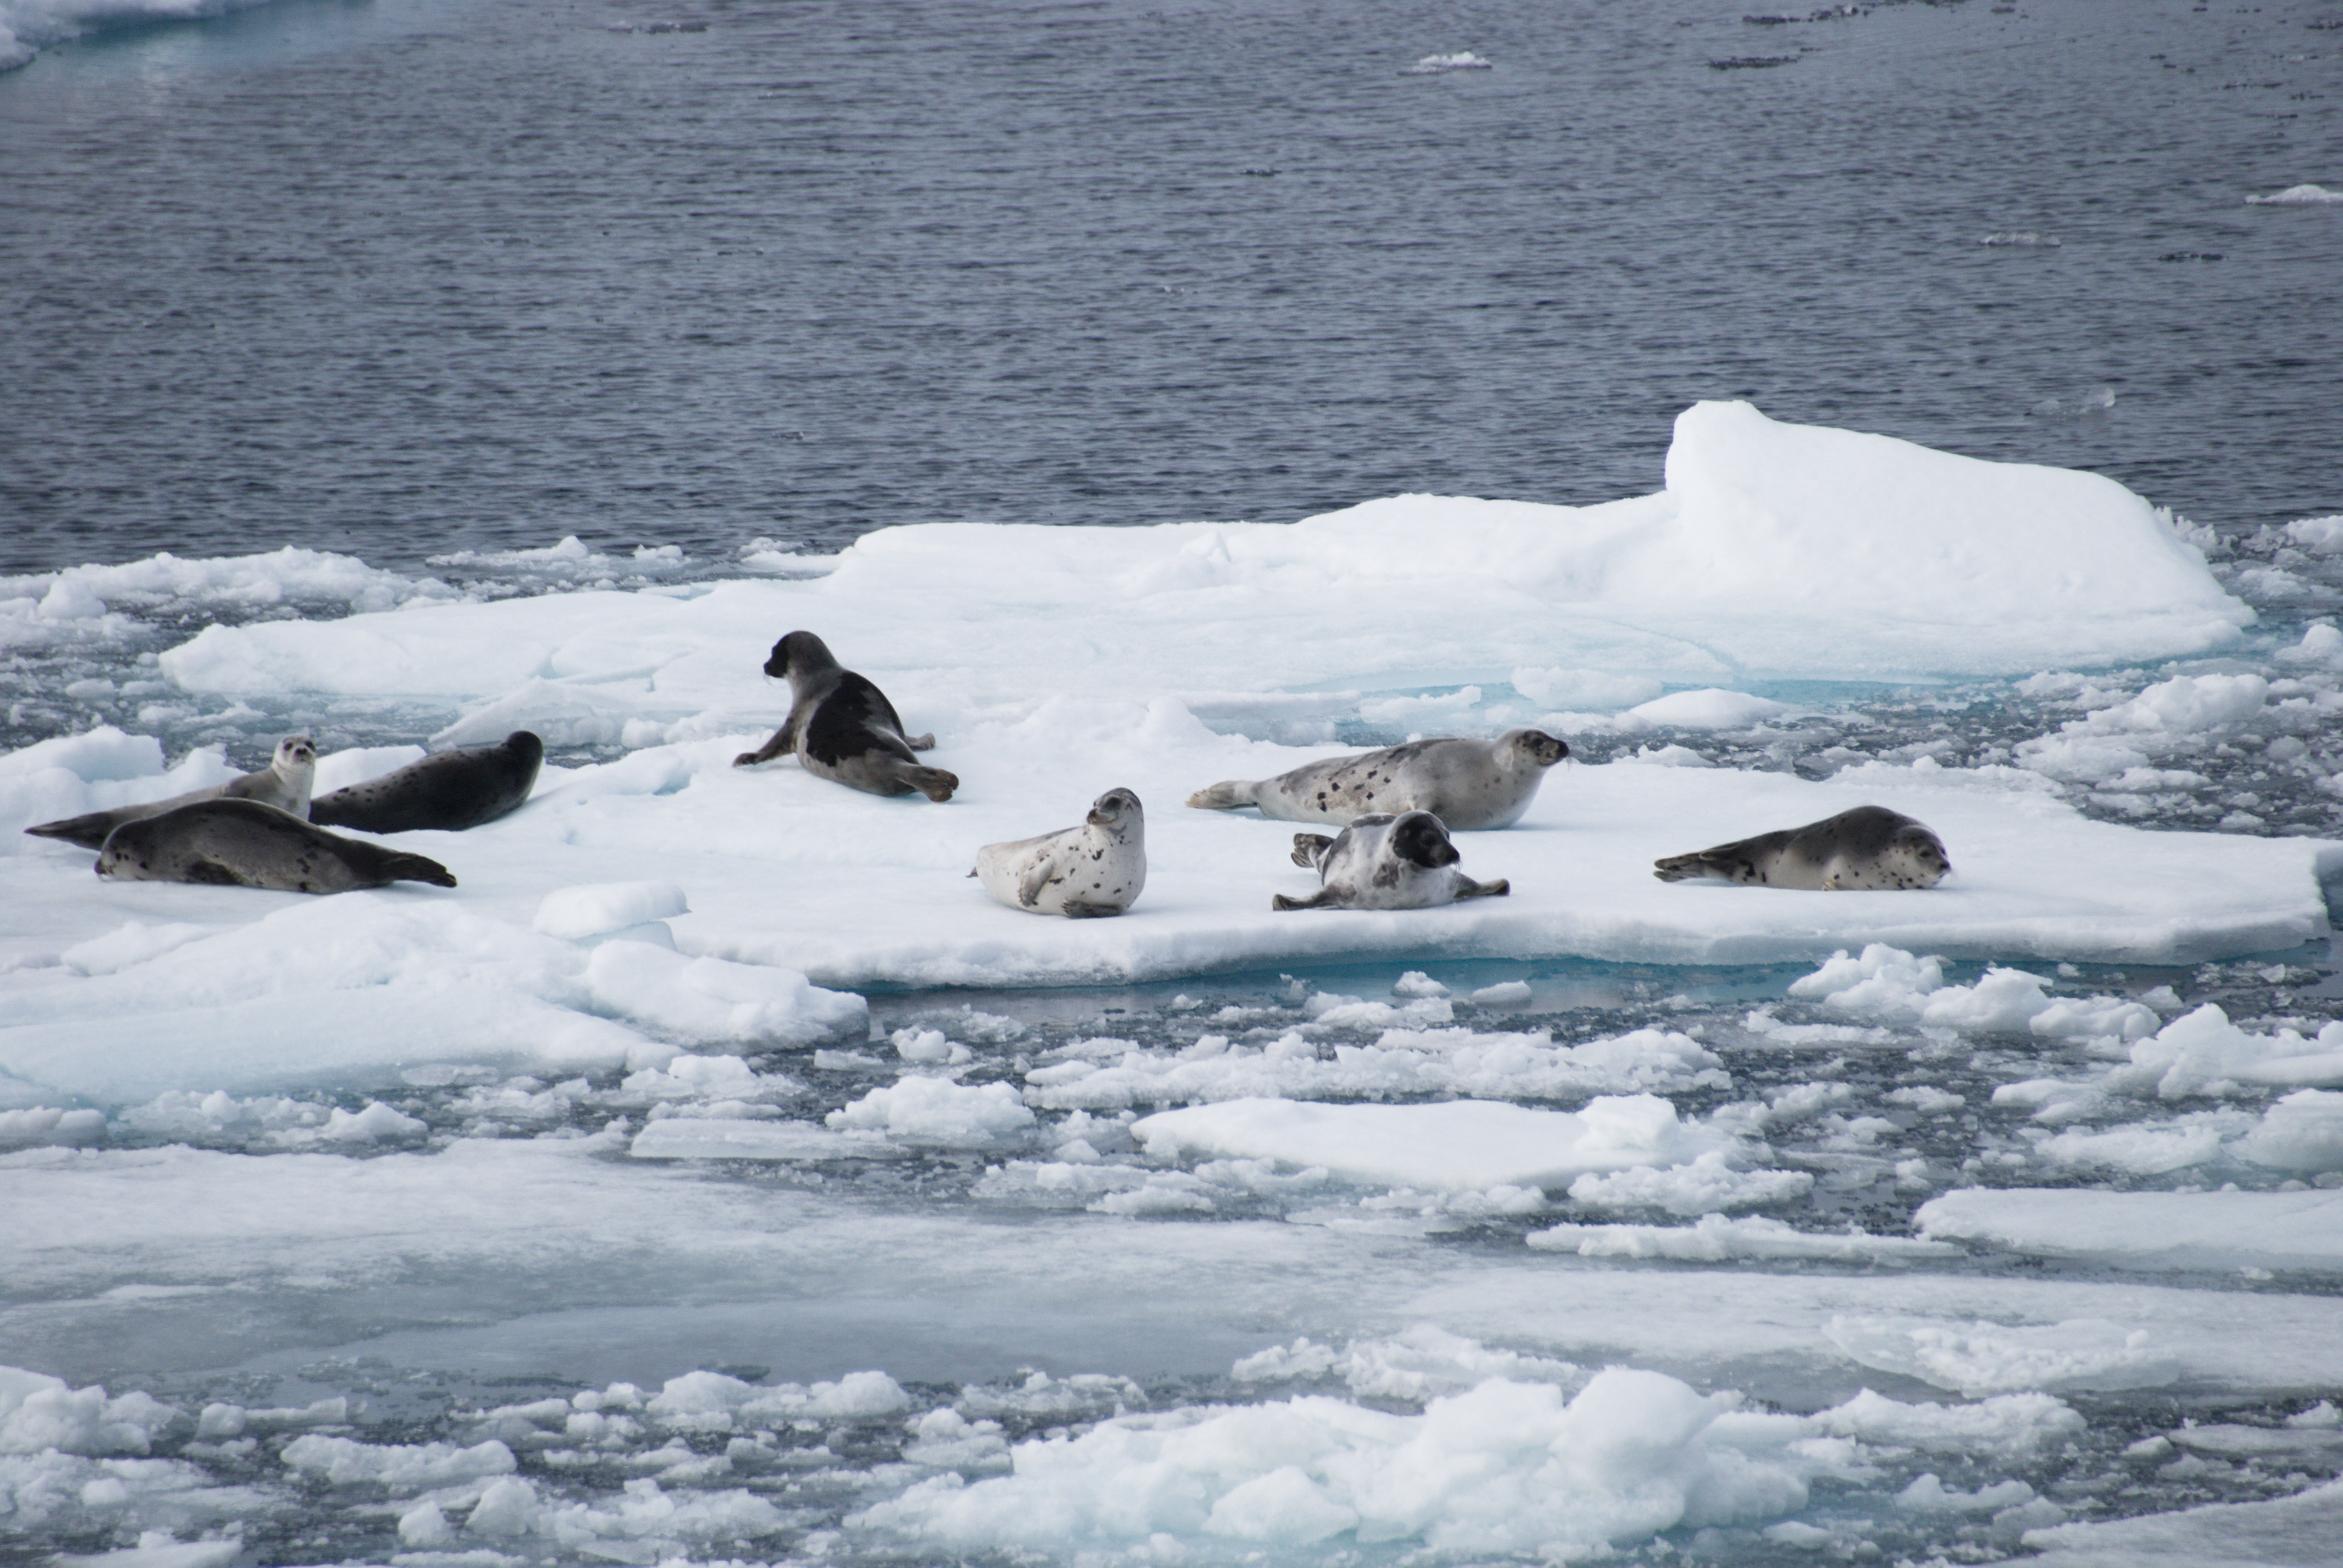 "Арктические амфибии" - моржи и тюлени